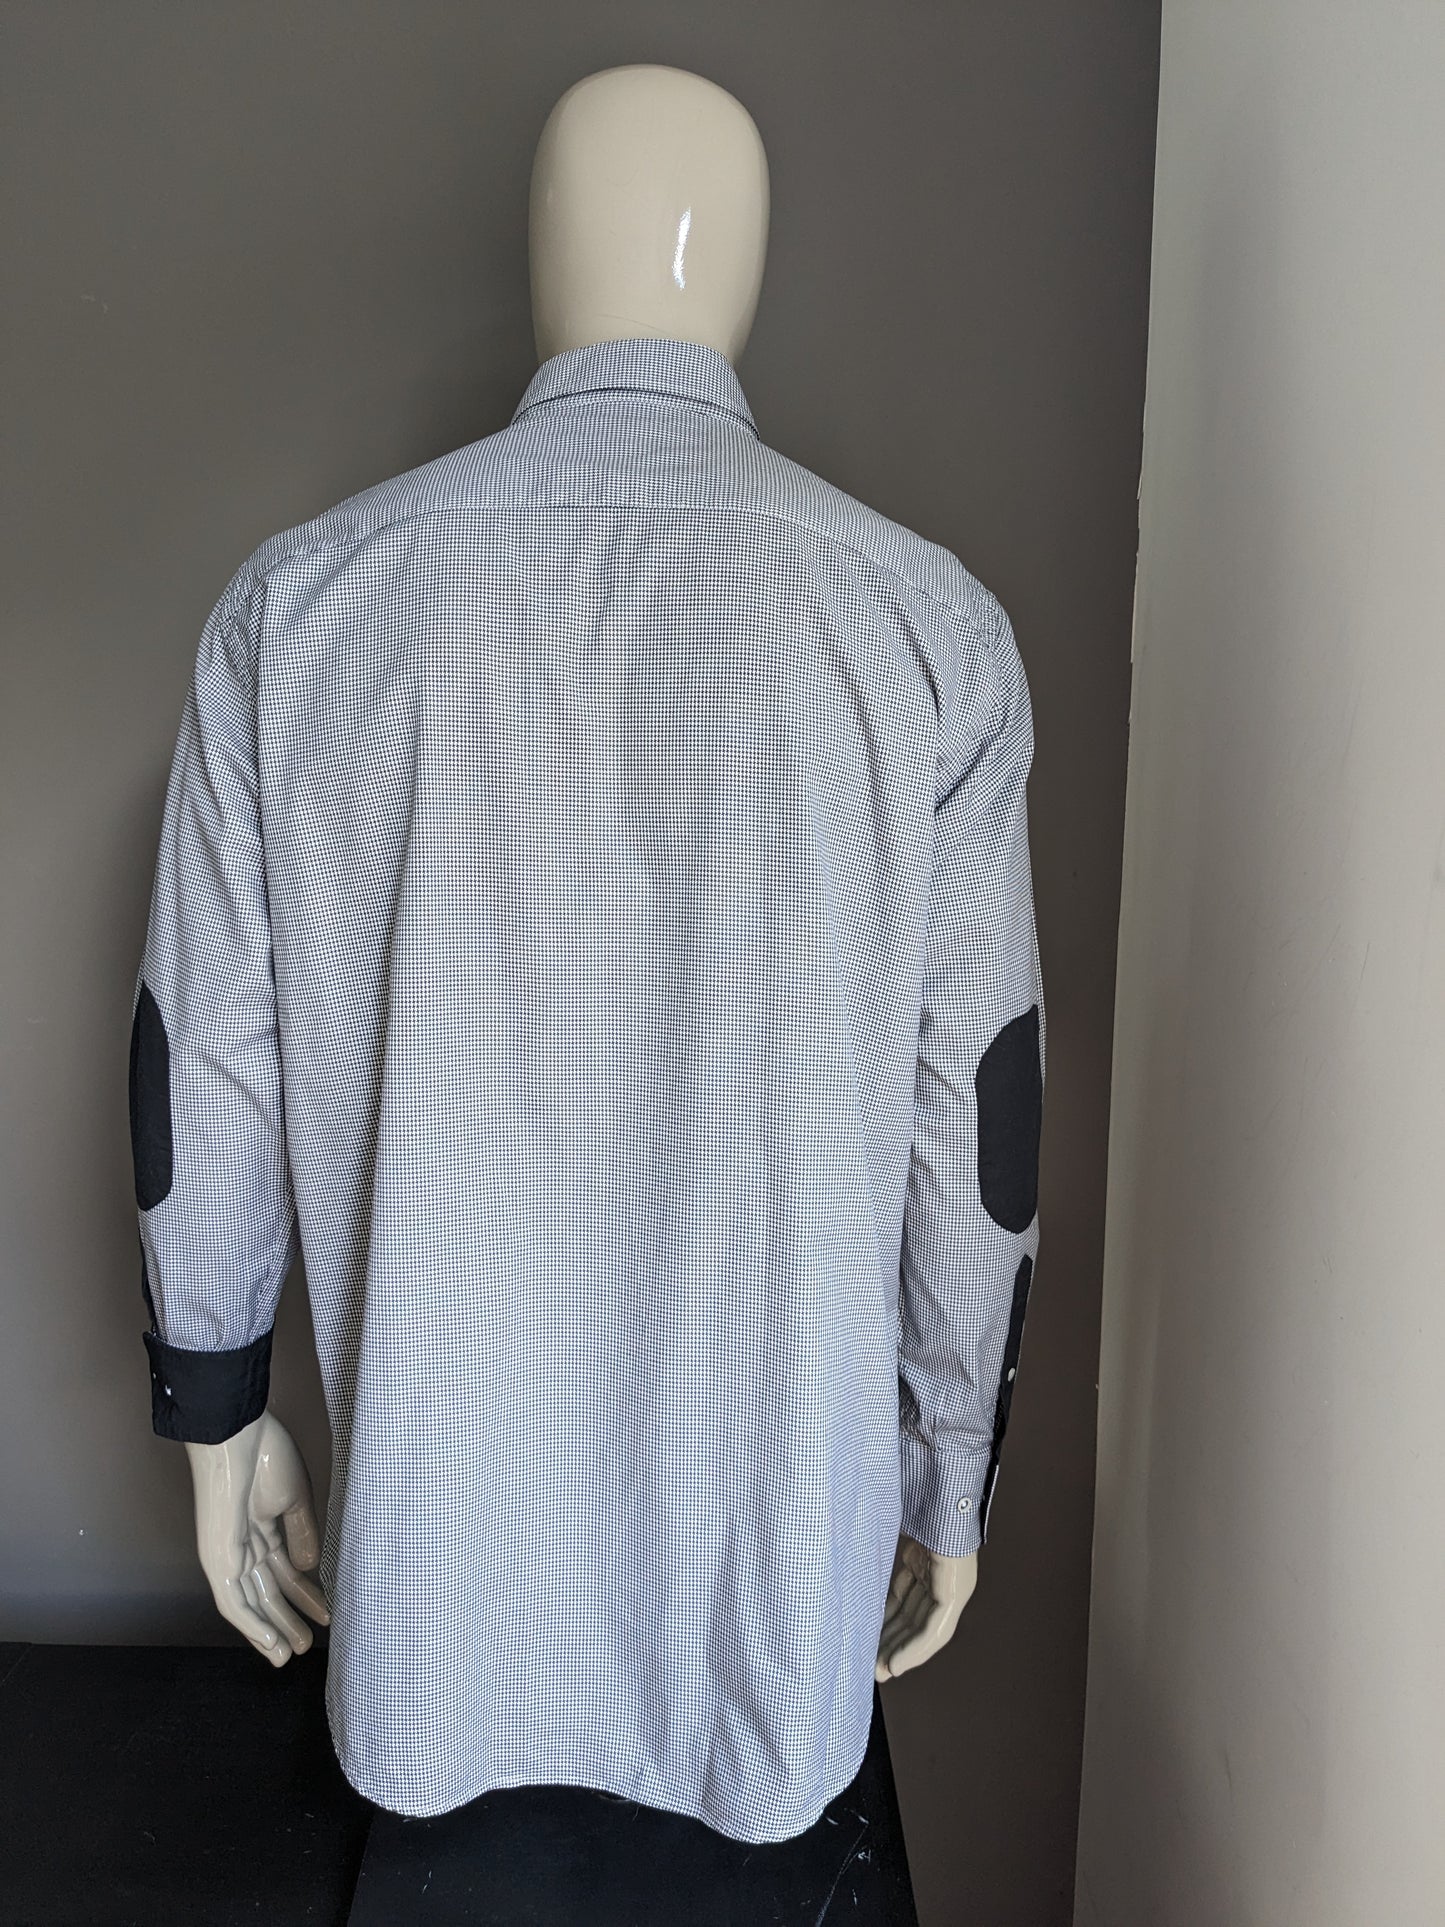 BLUMFONTAIN Camisa con parches de codo. Motivo en blanco y negro. Tamaño 2xl / xxl.